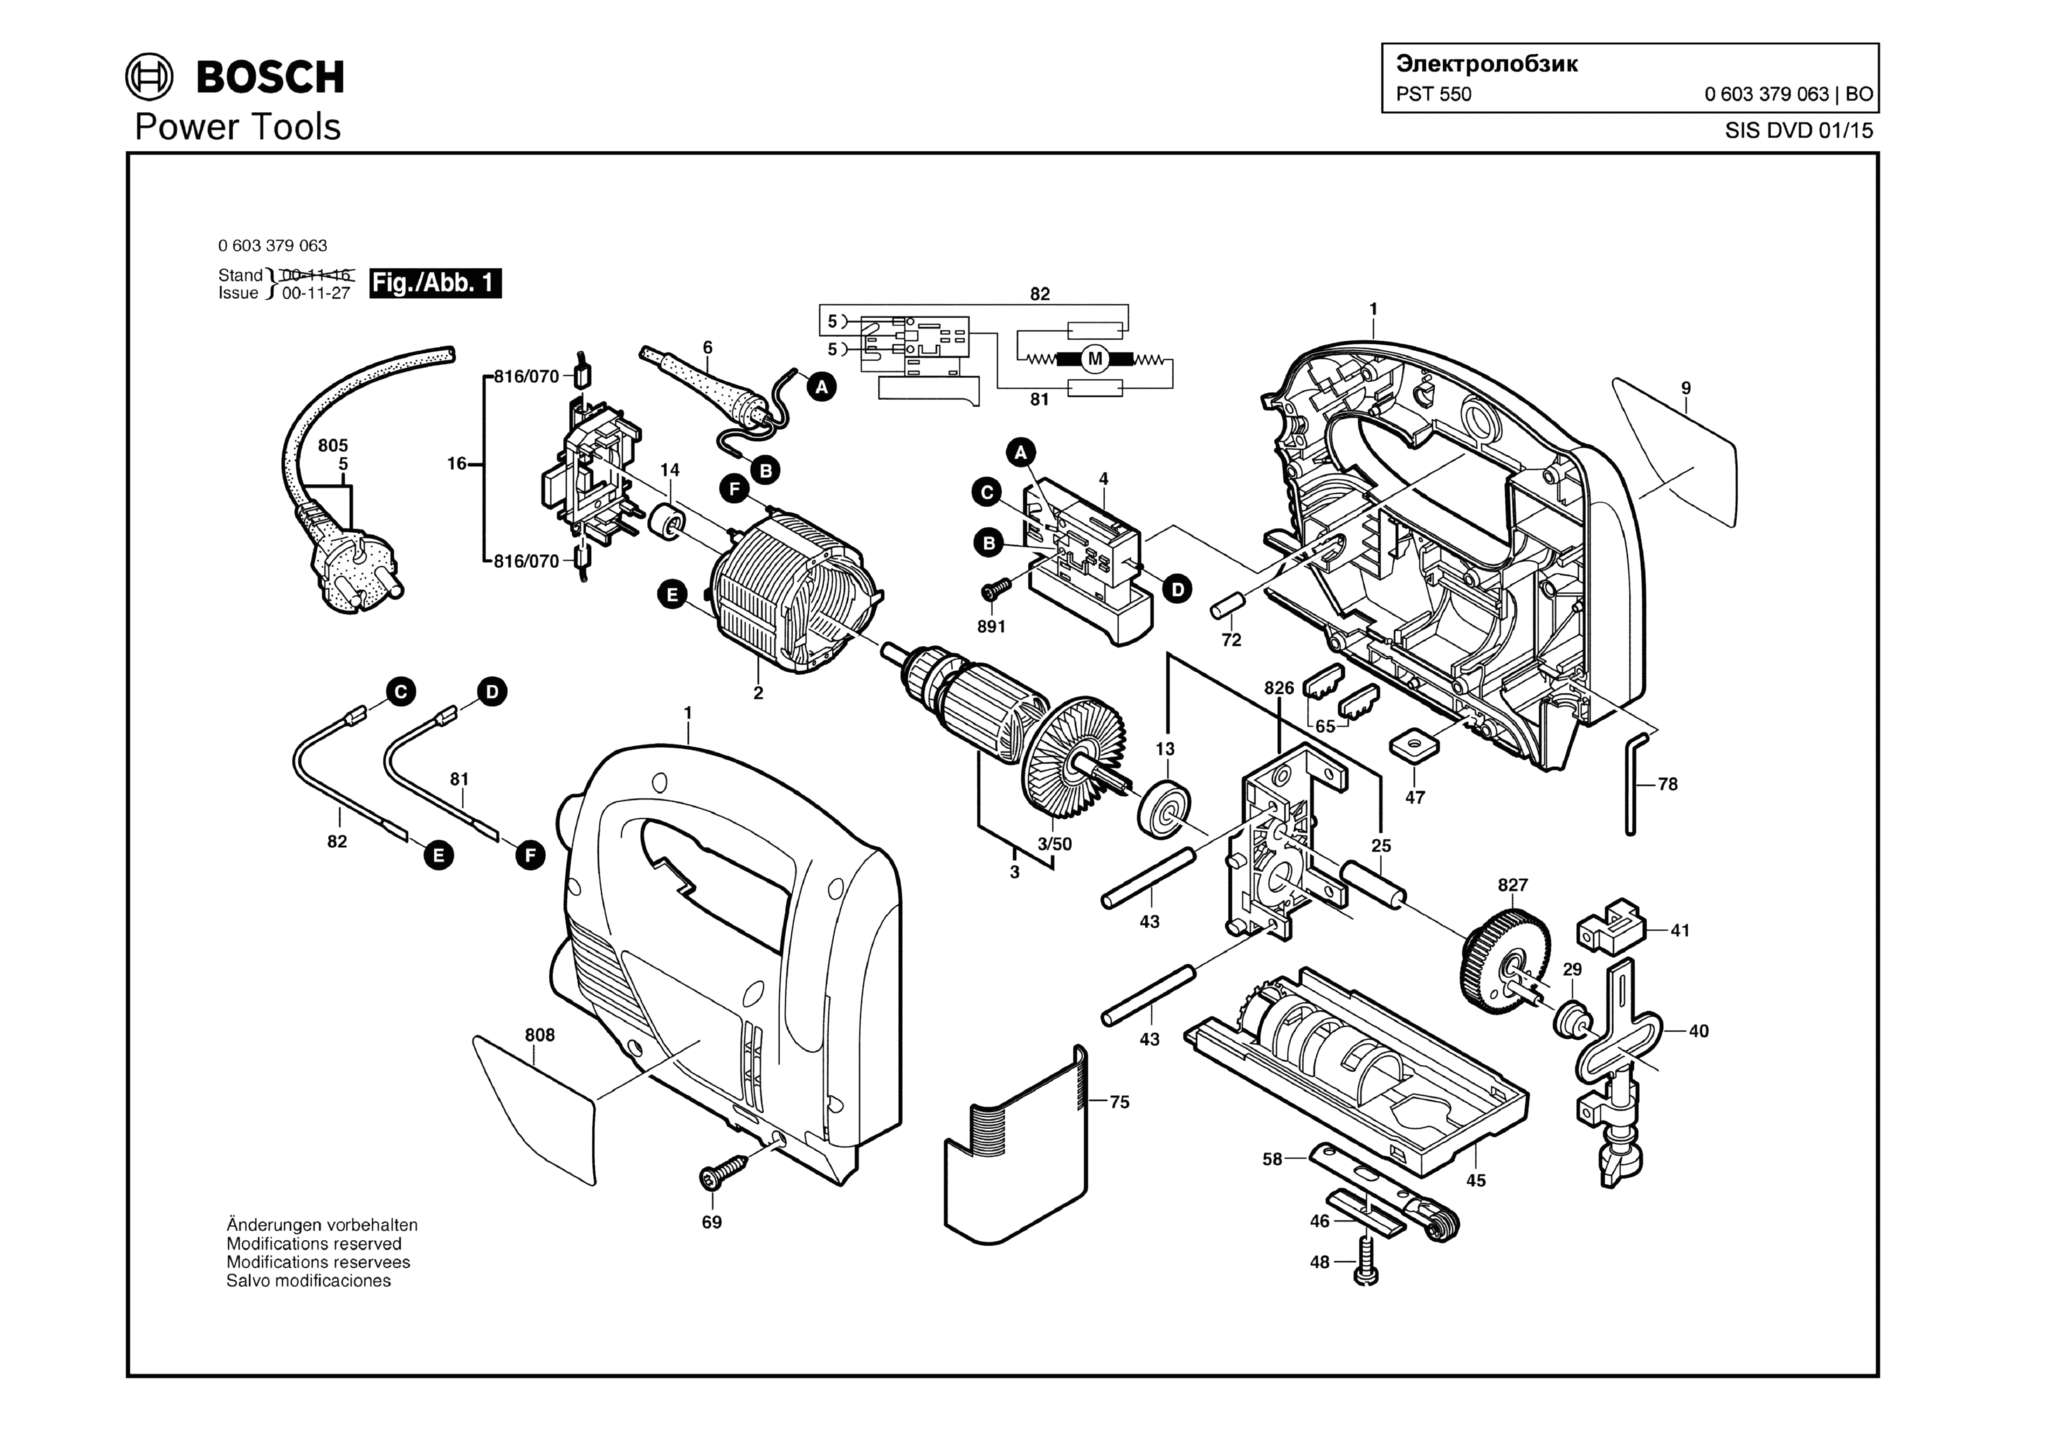 Запчасти, схема и деталировка Bosch PST 550 (ТИП 0603379063)